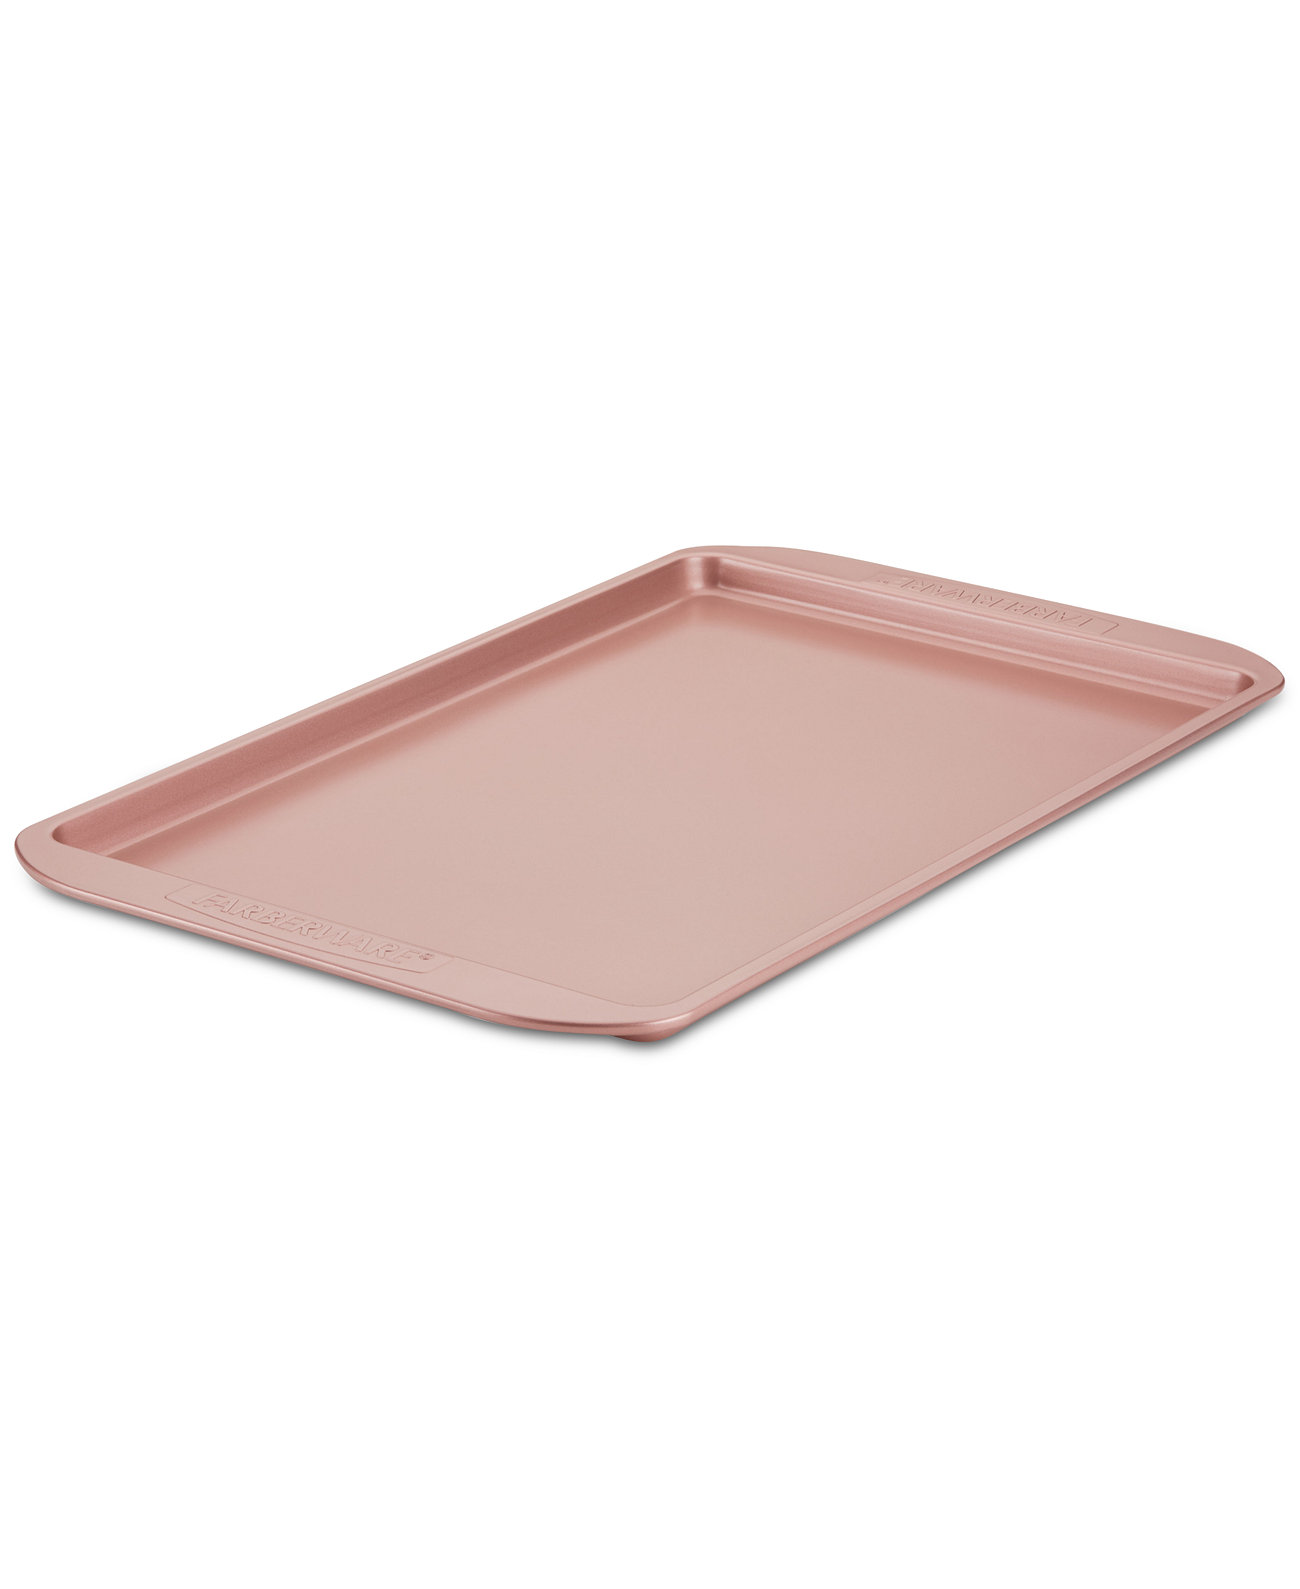 Формы для выпечки с антипригарным покрытием противень 11 x 17 дюймов, розовое золото Farberware